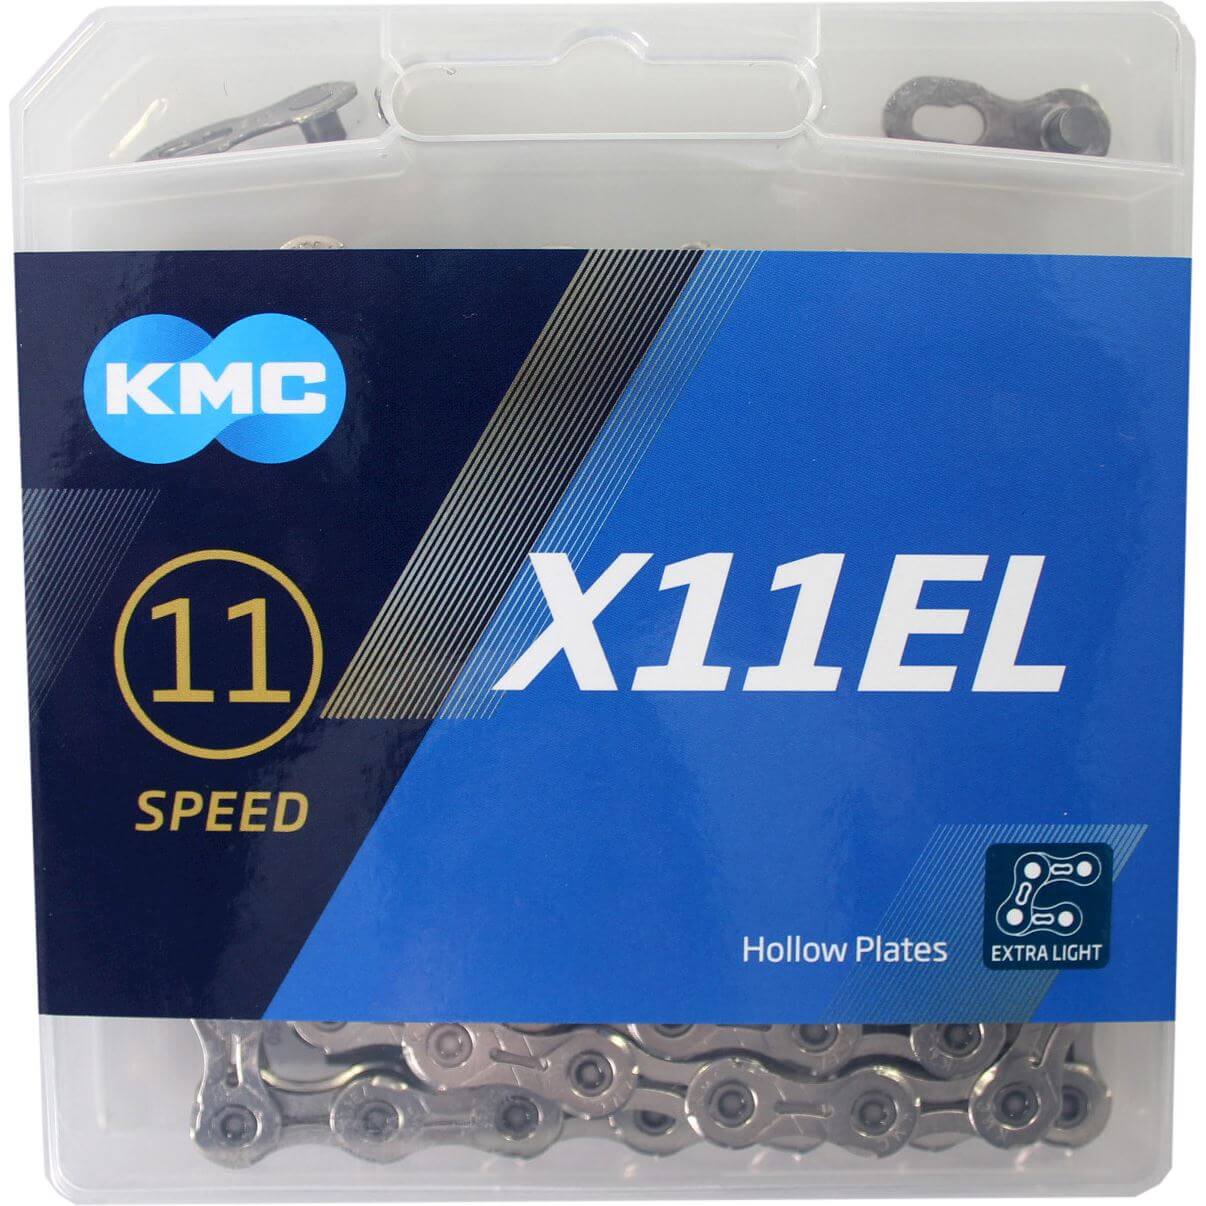 KMC ketting 1 2-11 128 118 11v X11EL zilver